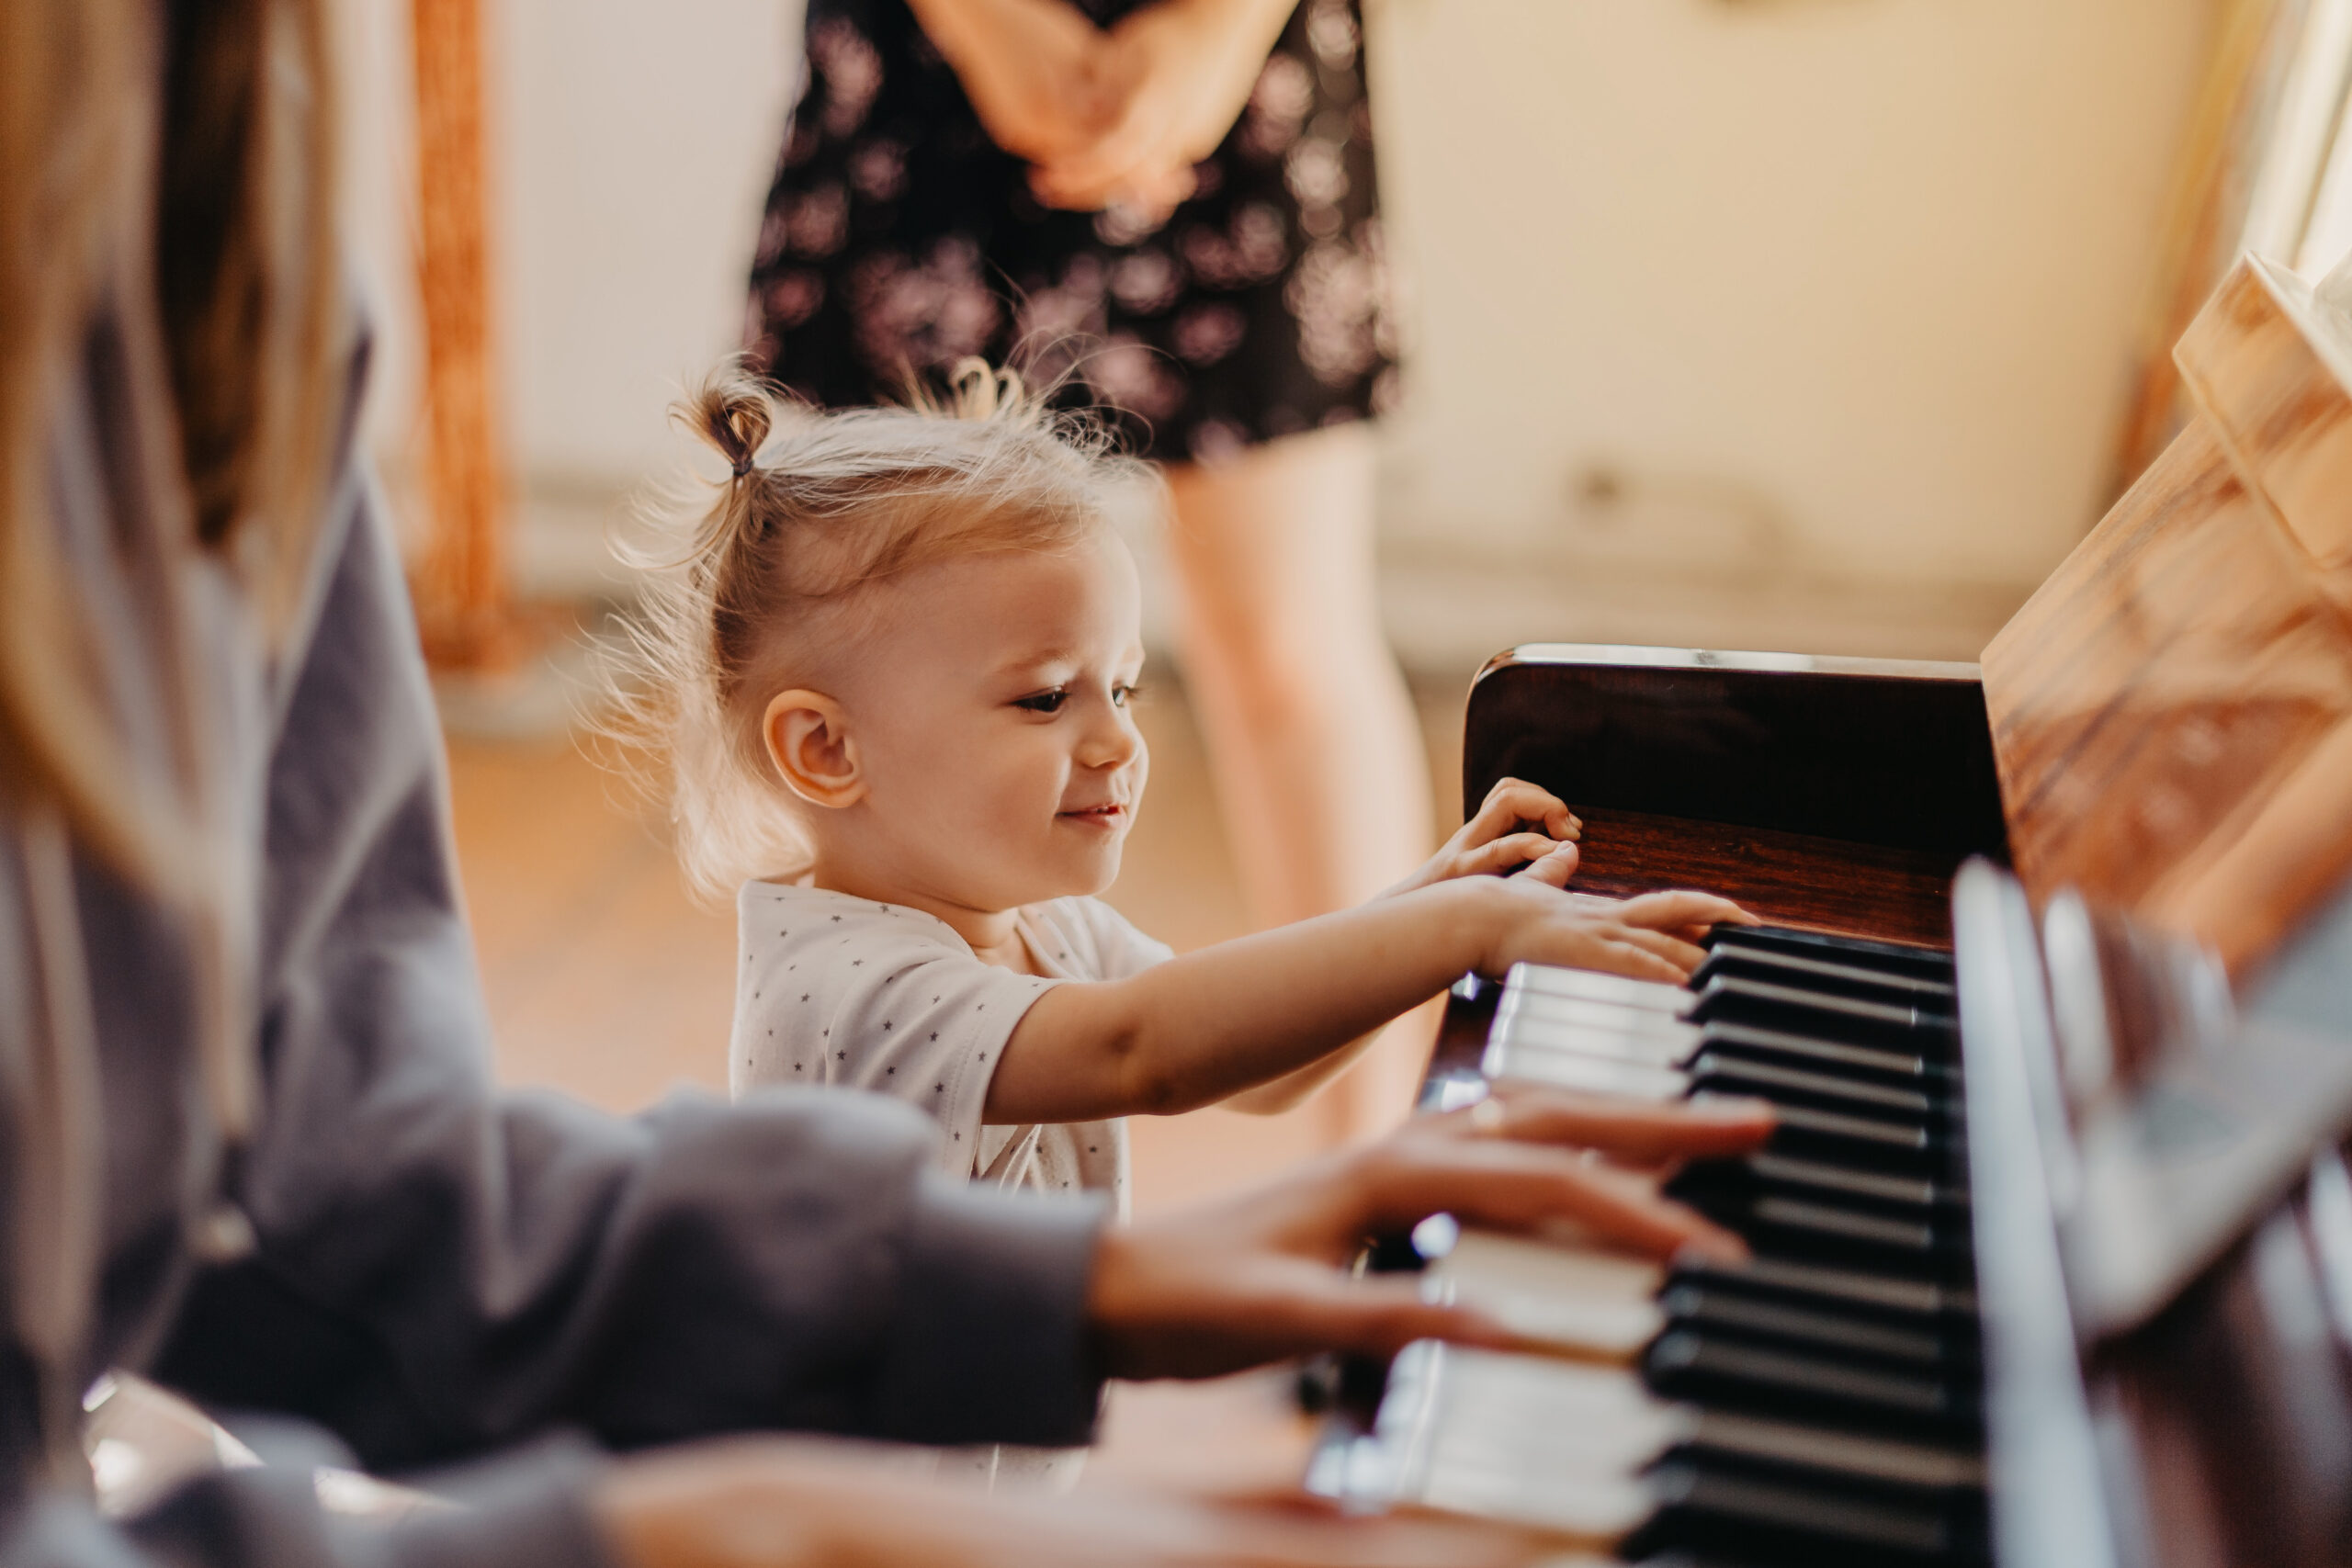 bambina che suona il piano